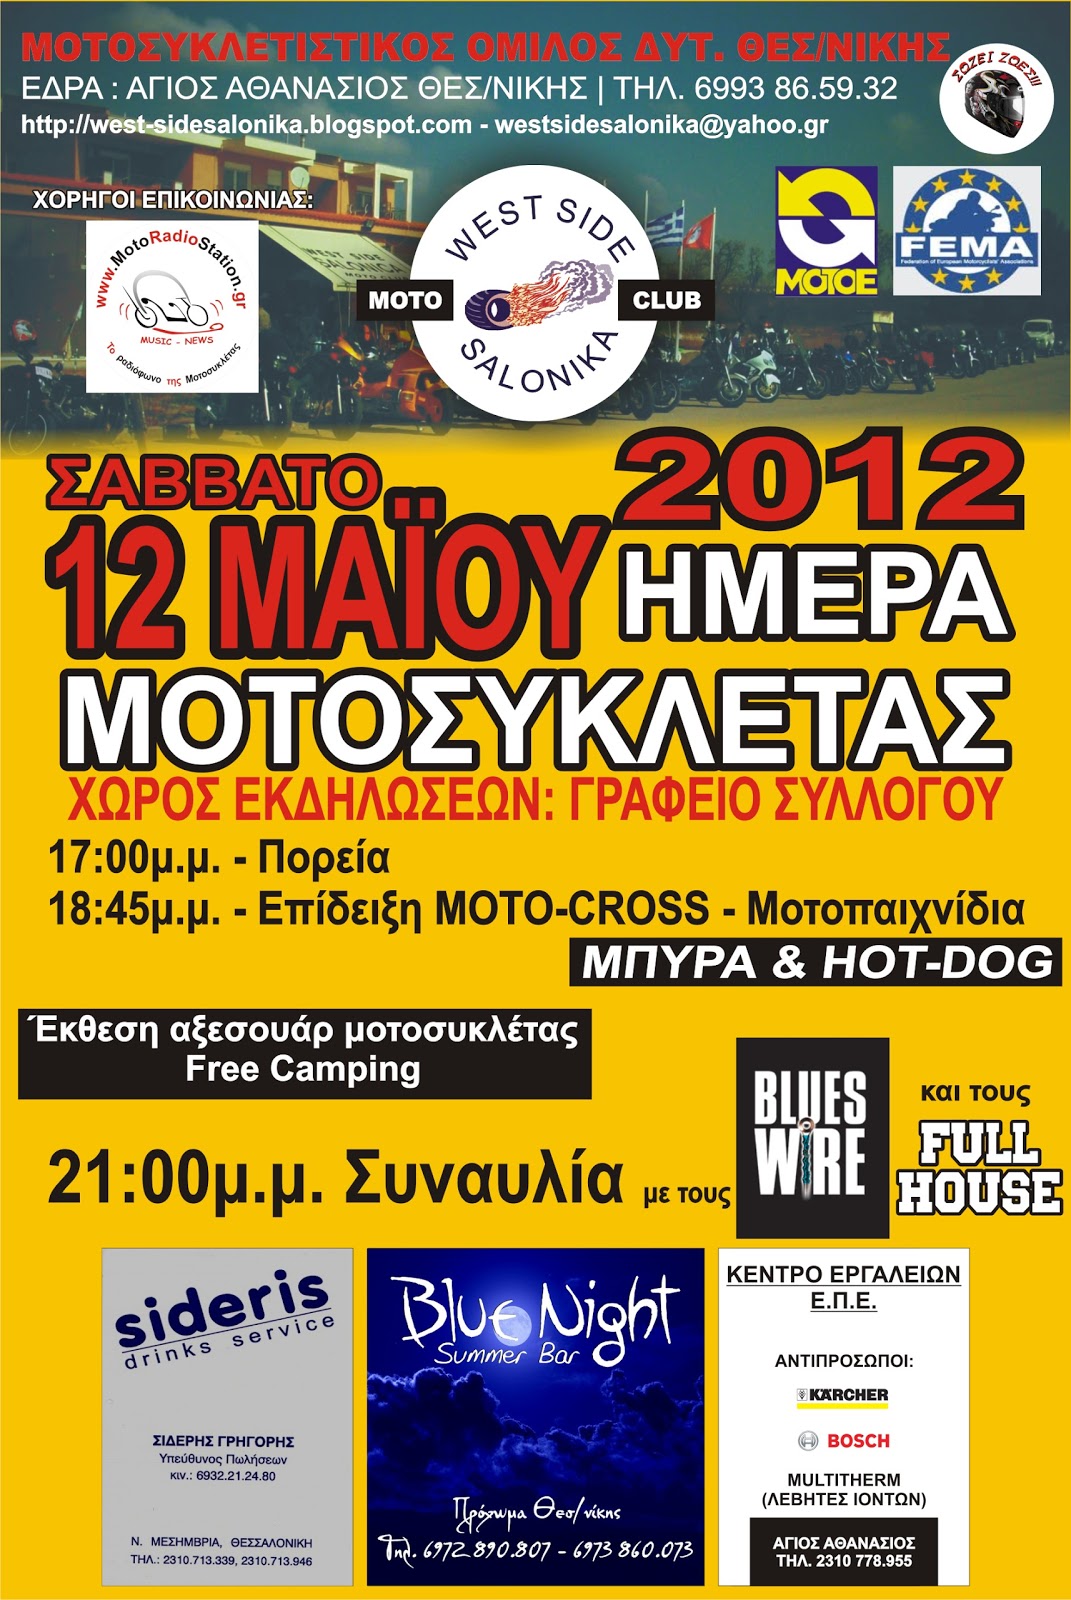 Ημερα μοτοσυκλετας Afisa_moto+day_2012